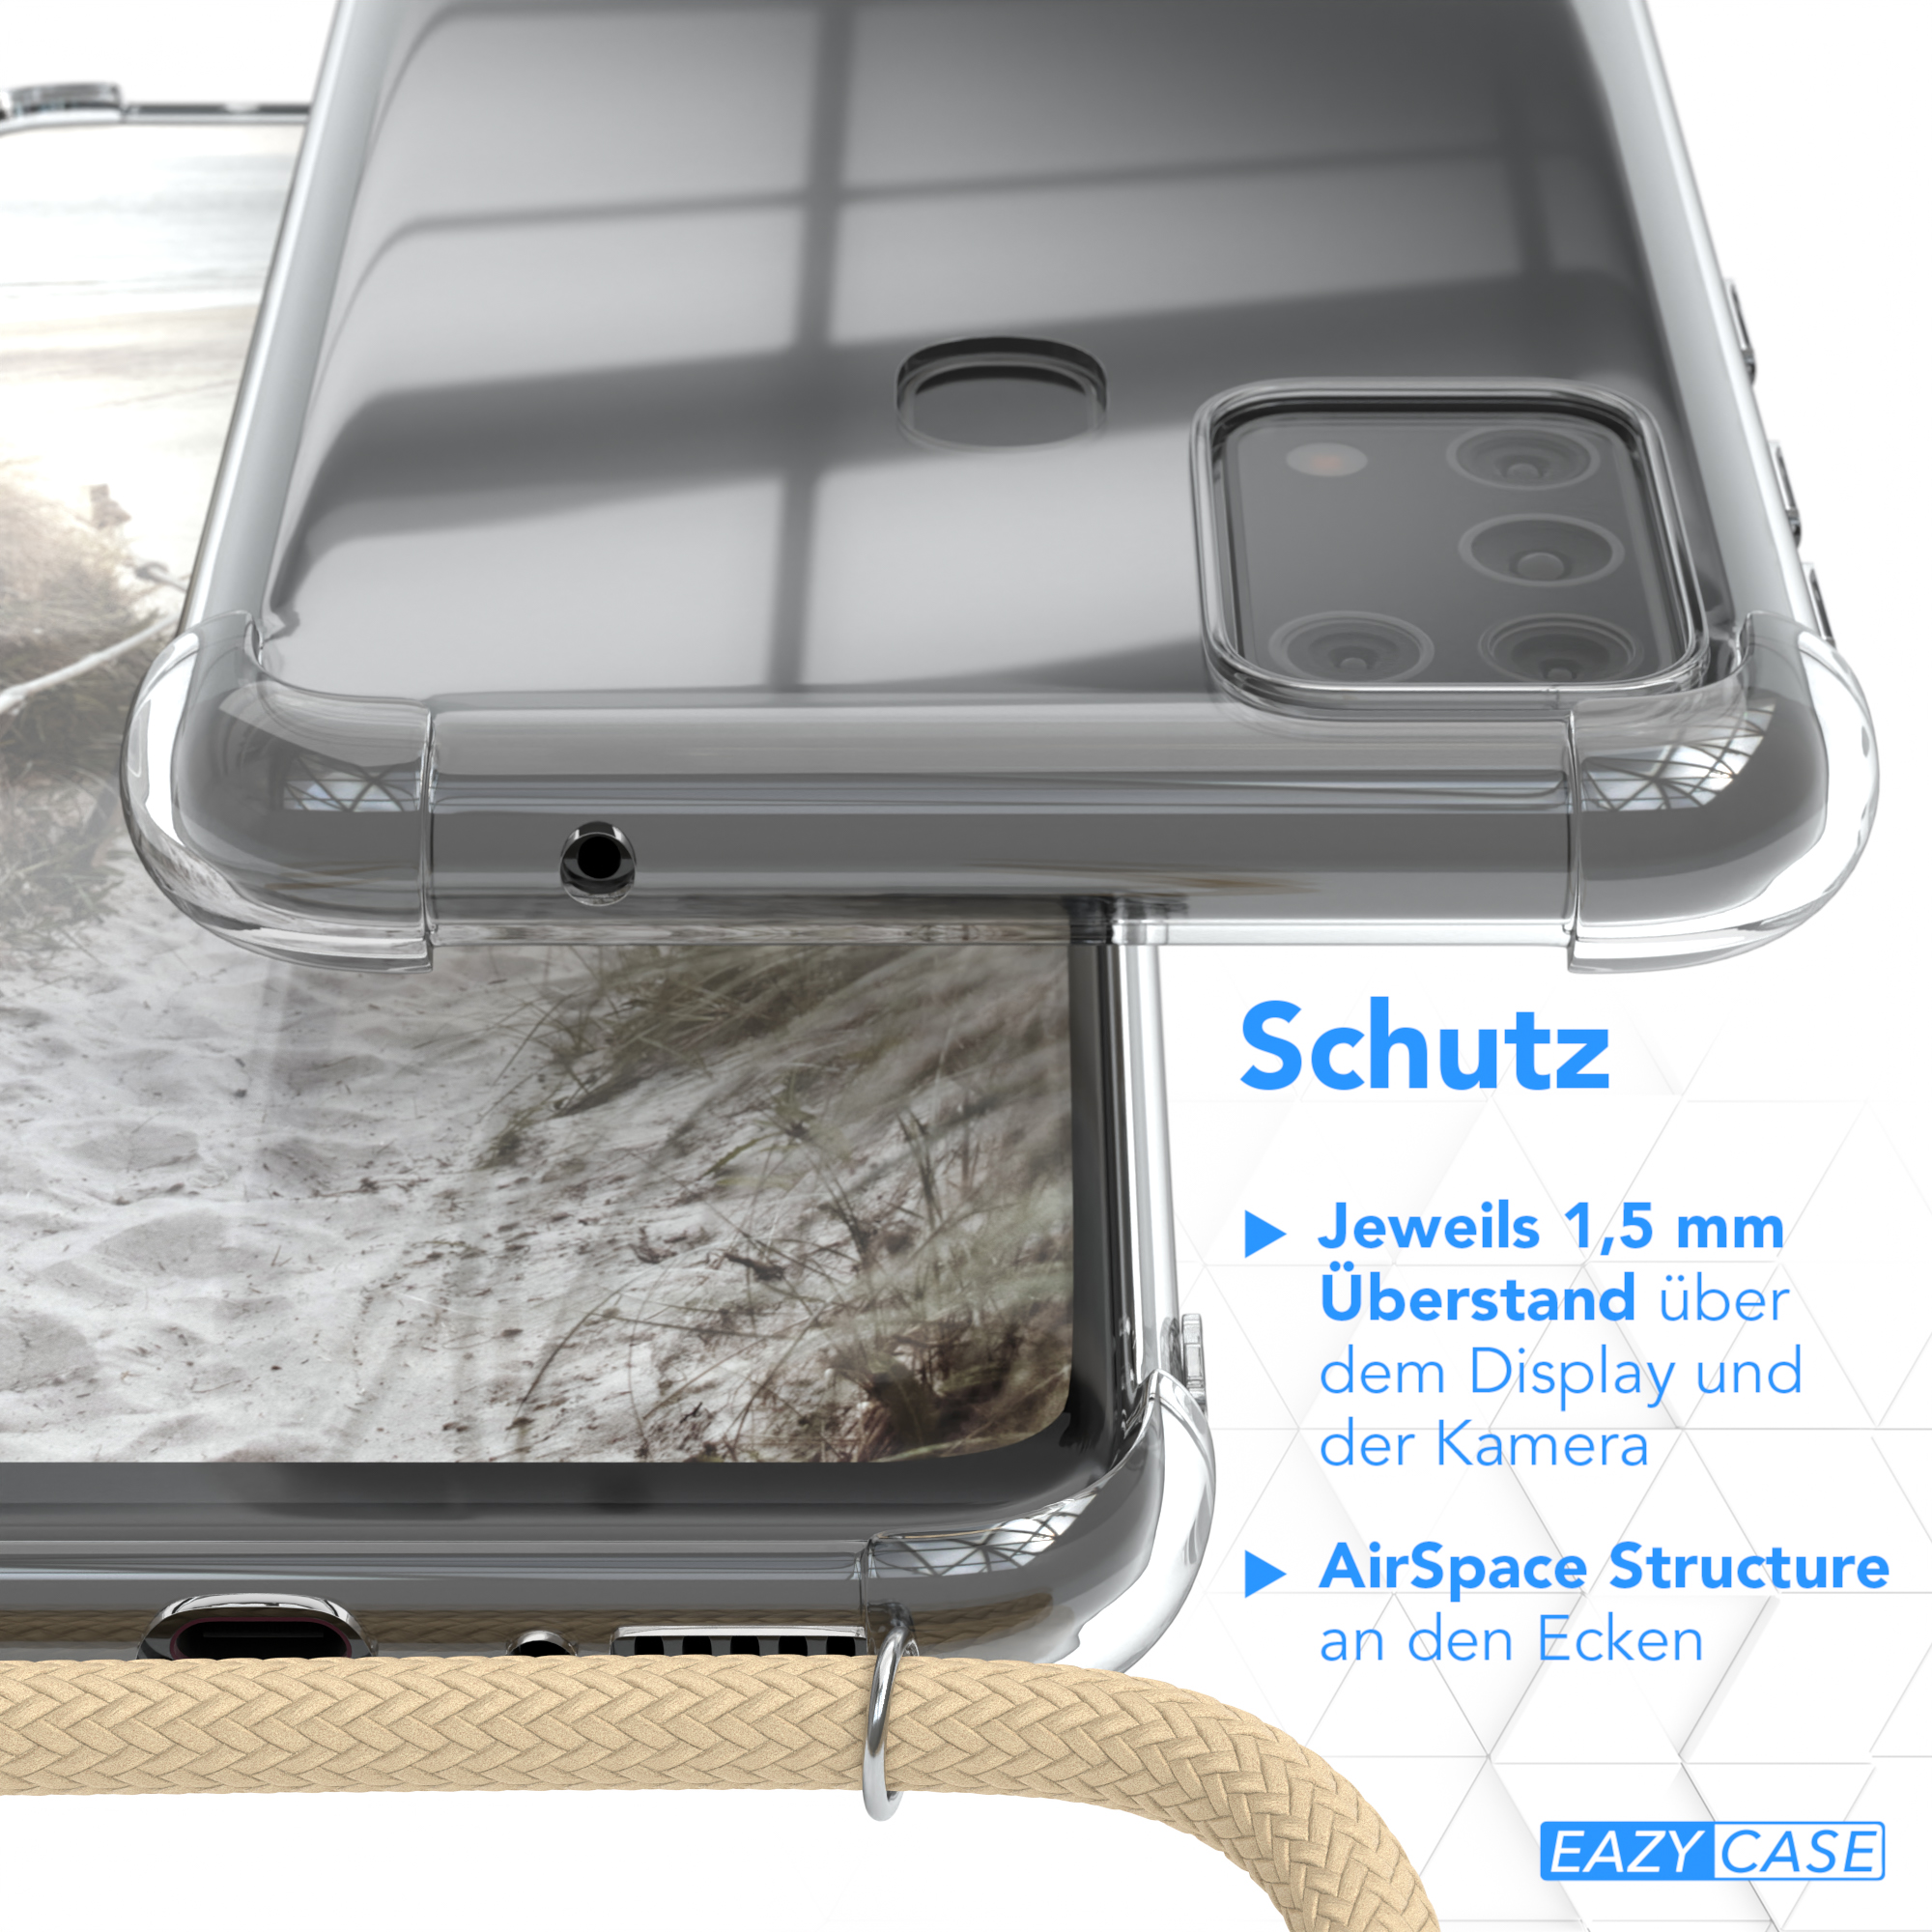 EAZY CASE Clear M31, Galaxy Samsung, Taupe mit Umhängetasche, Beige Umhängeband, Cover